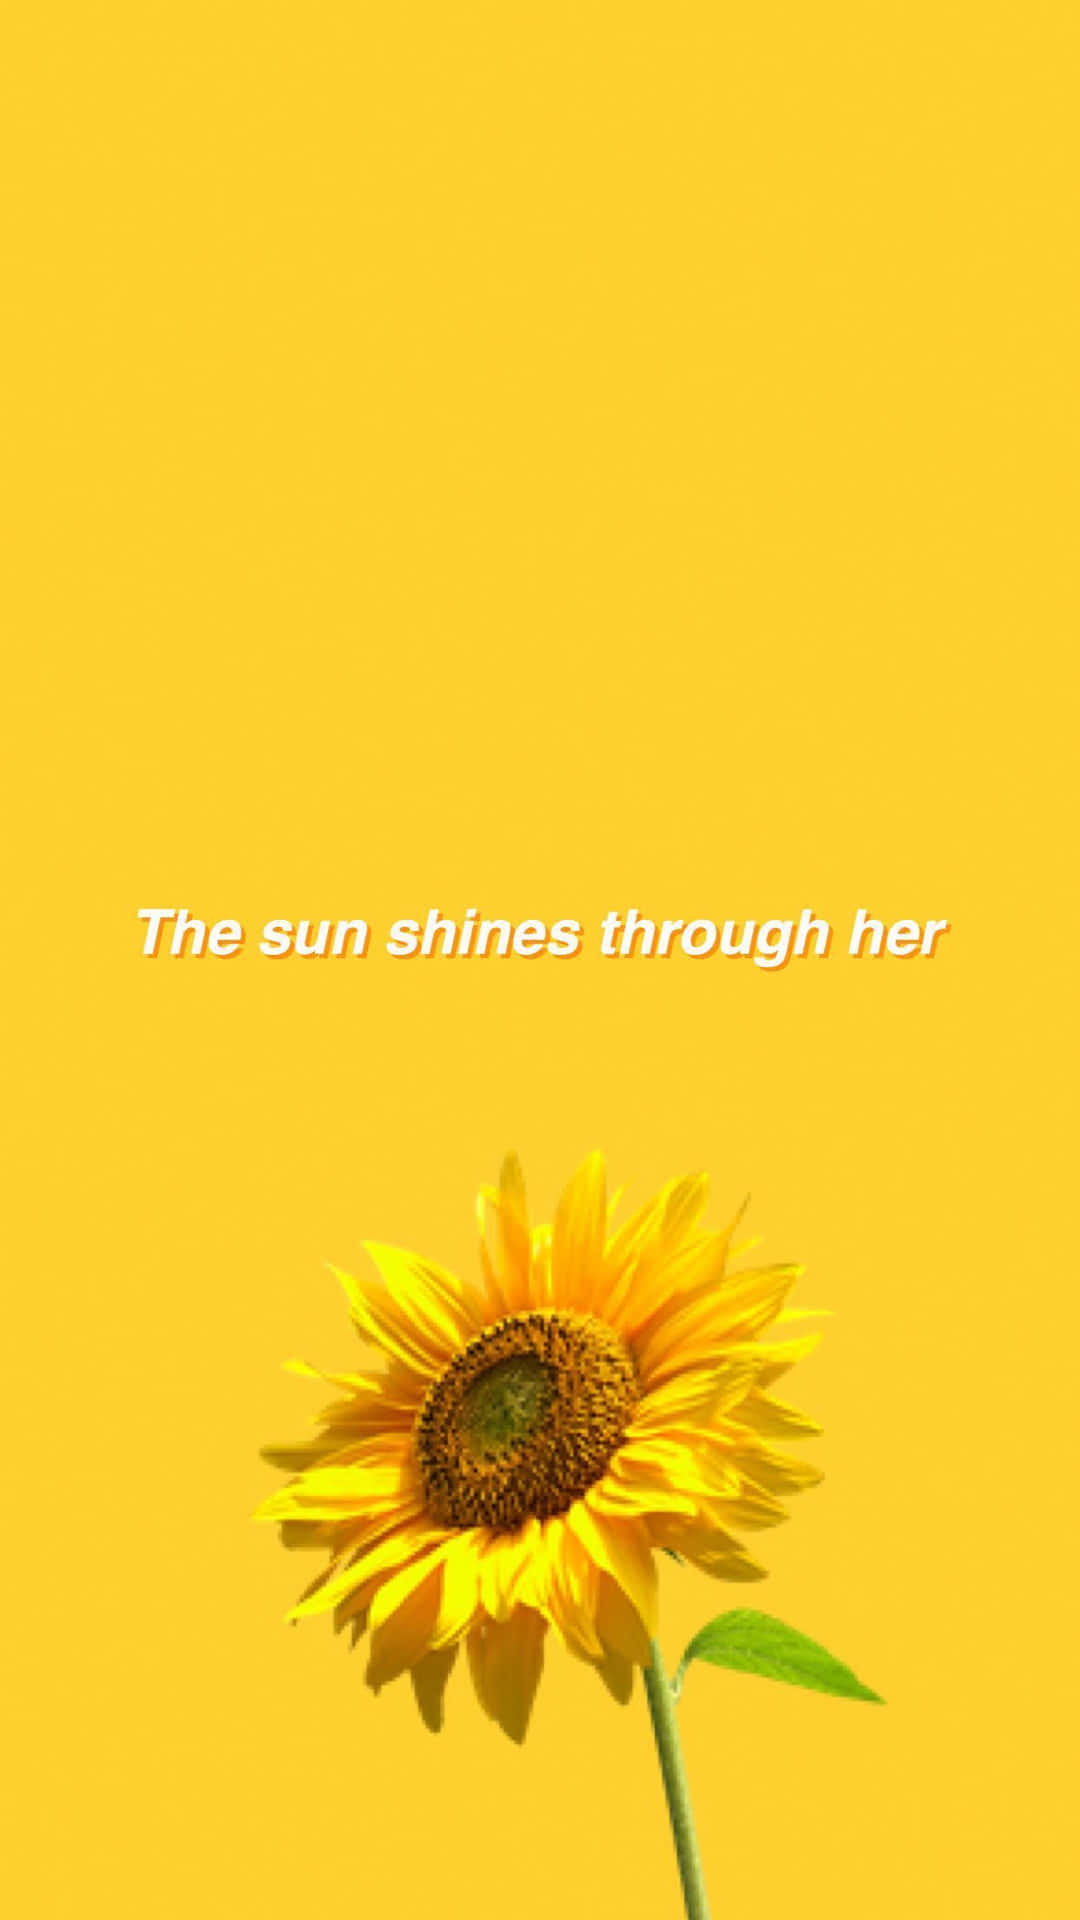 "A Bright, Vibrant Sunflower in the Sun" Wallpaper